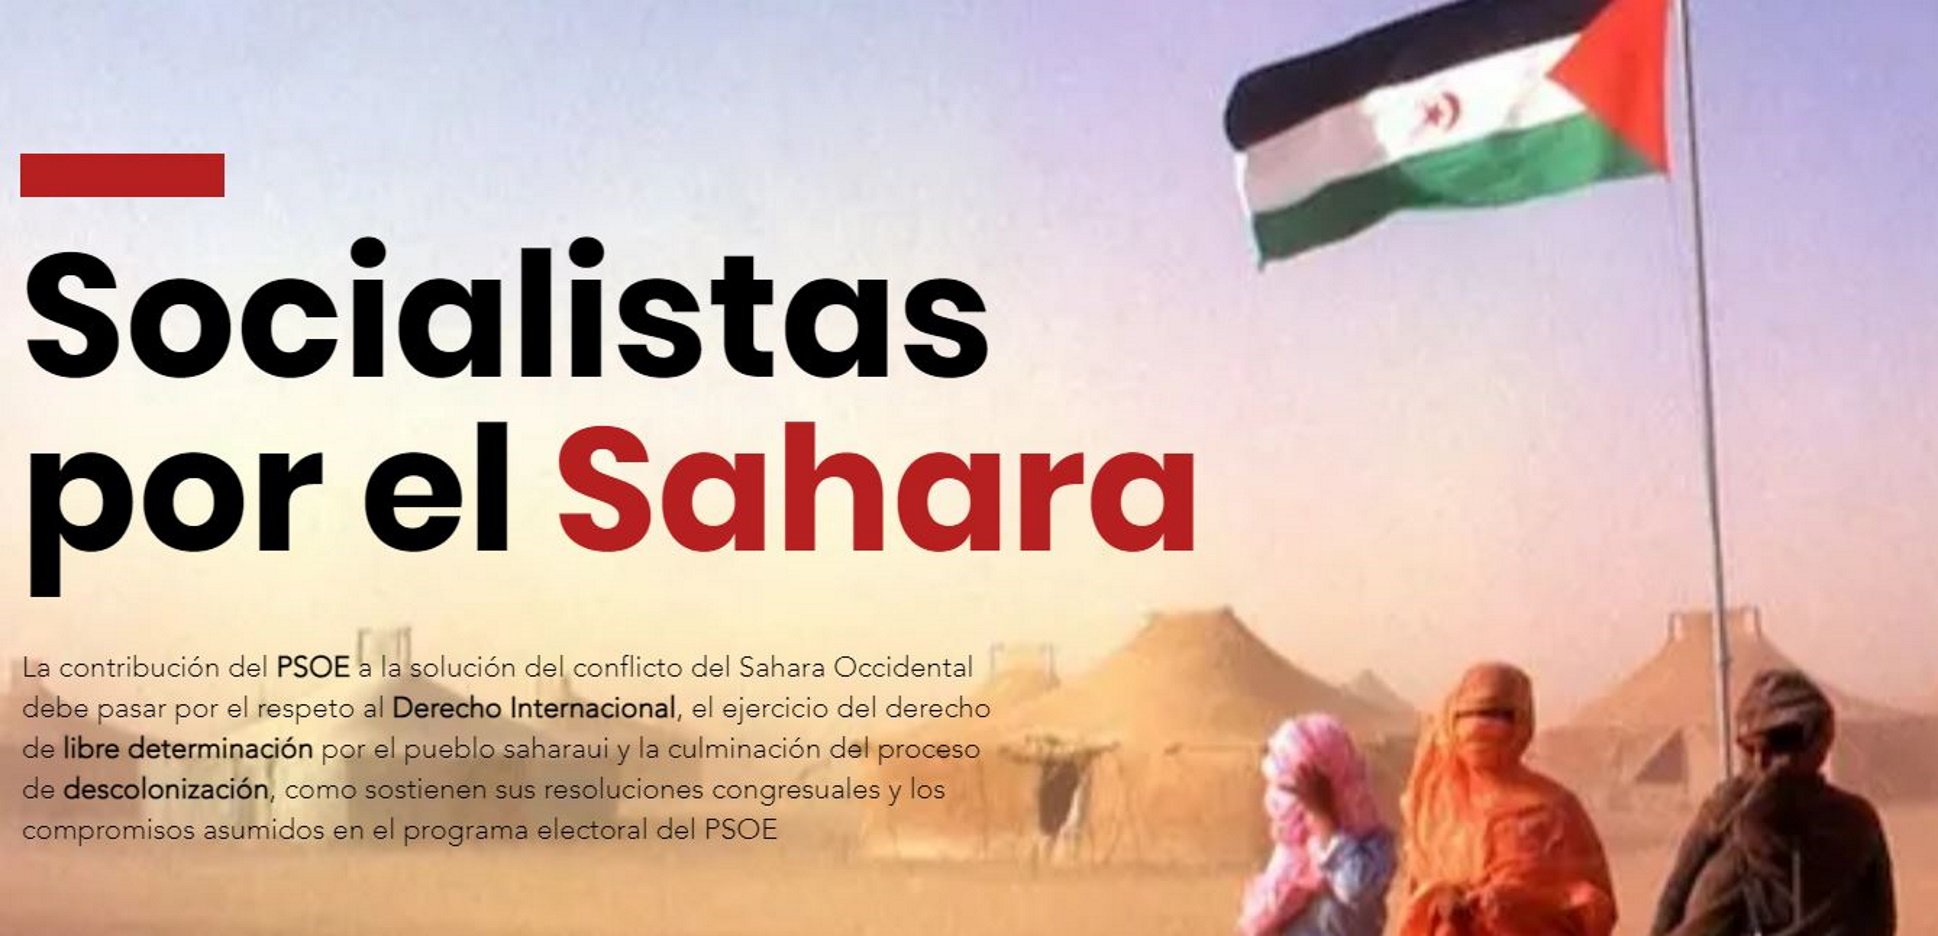 Odón Elorza i militants del PSOE es rebel·len i creen "Socialistes pel Sàhara"